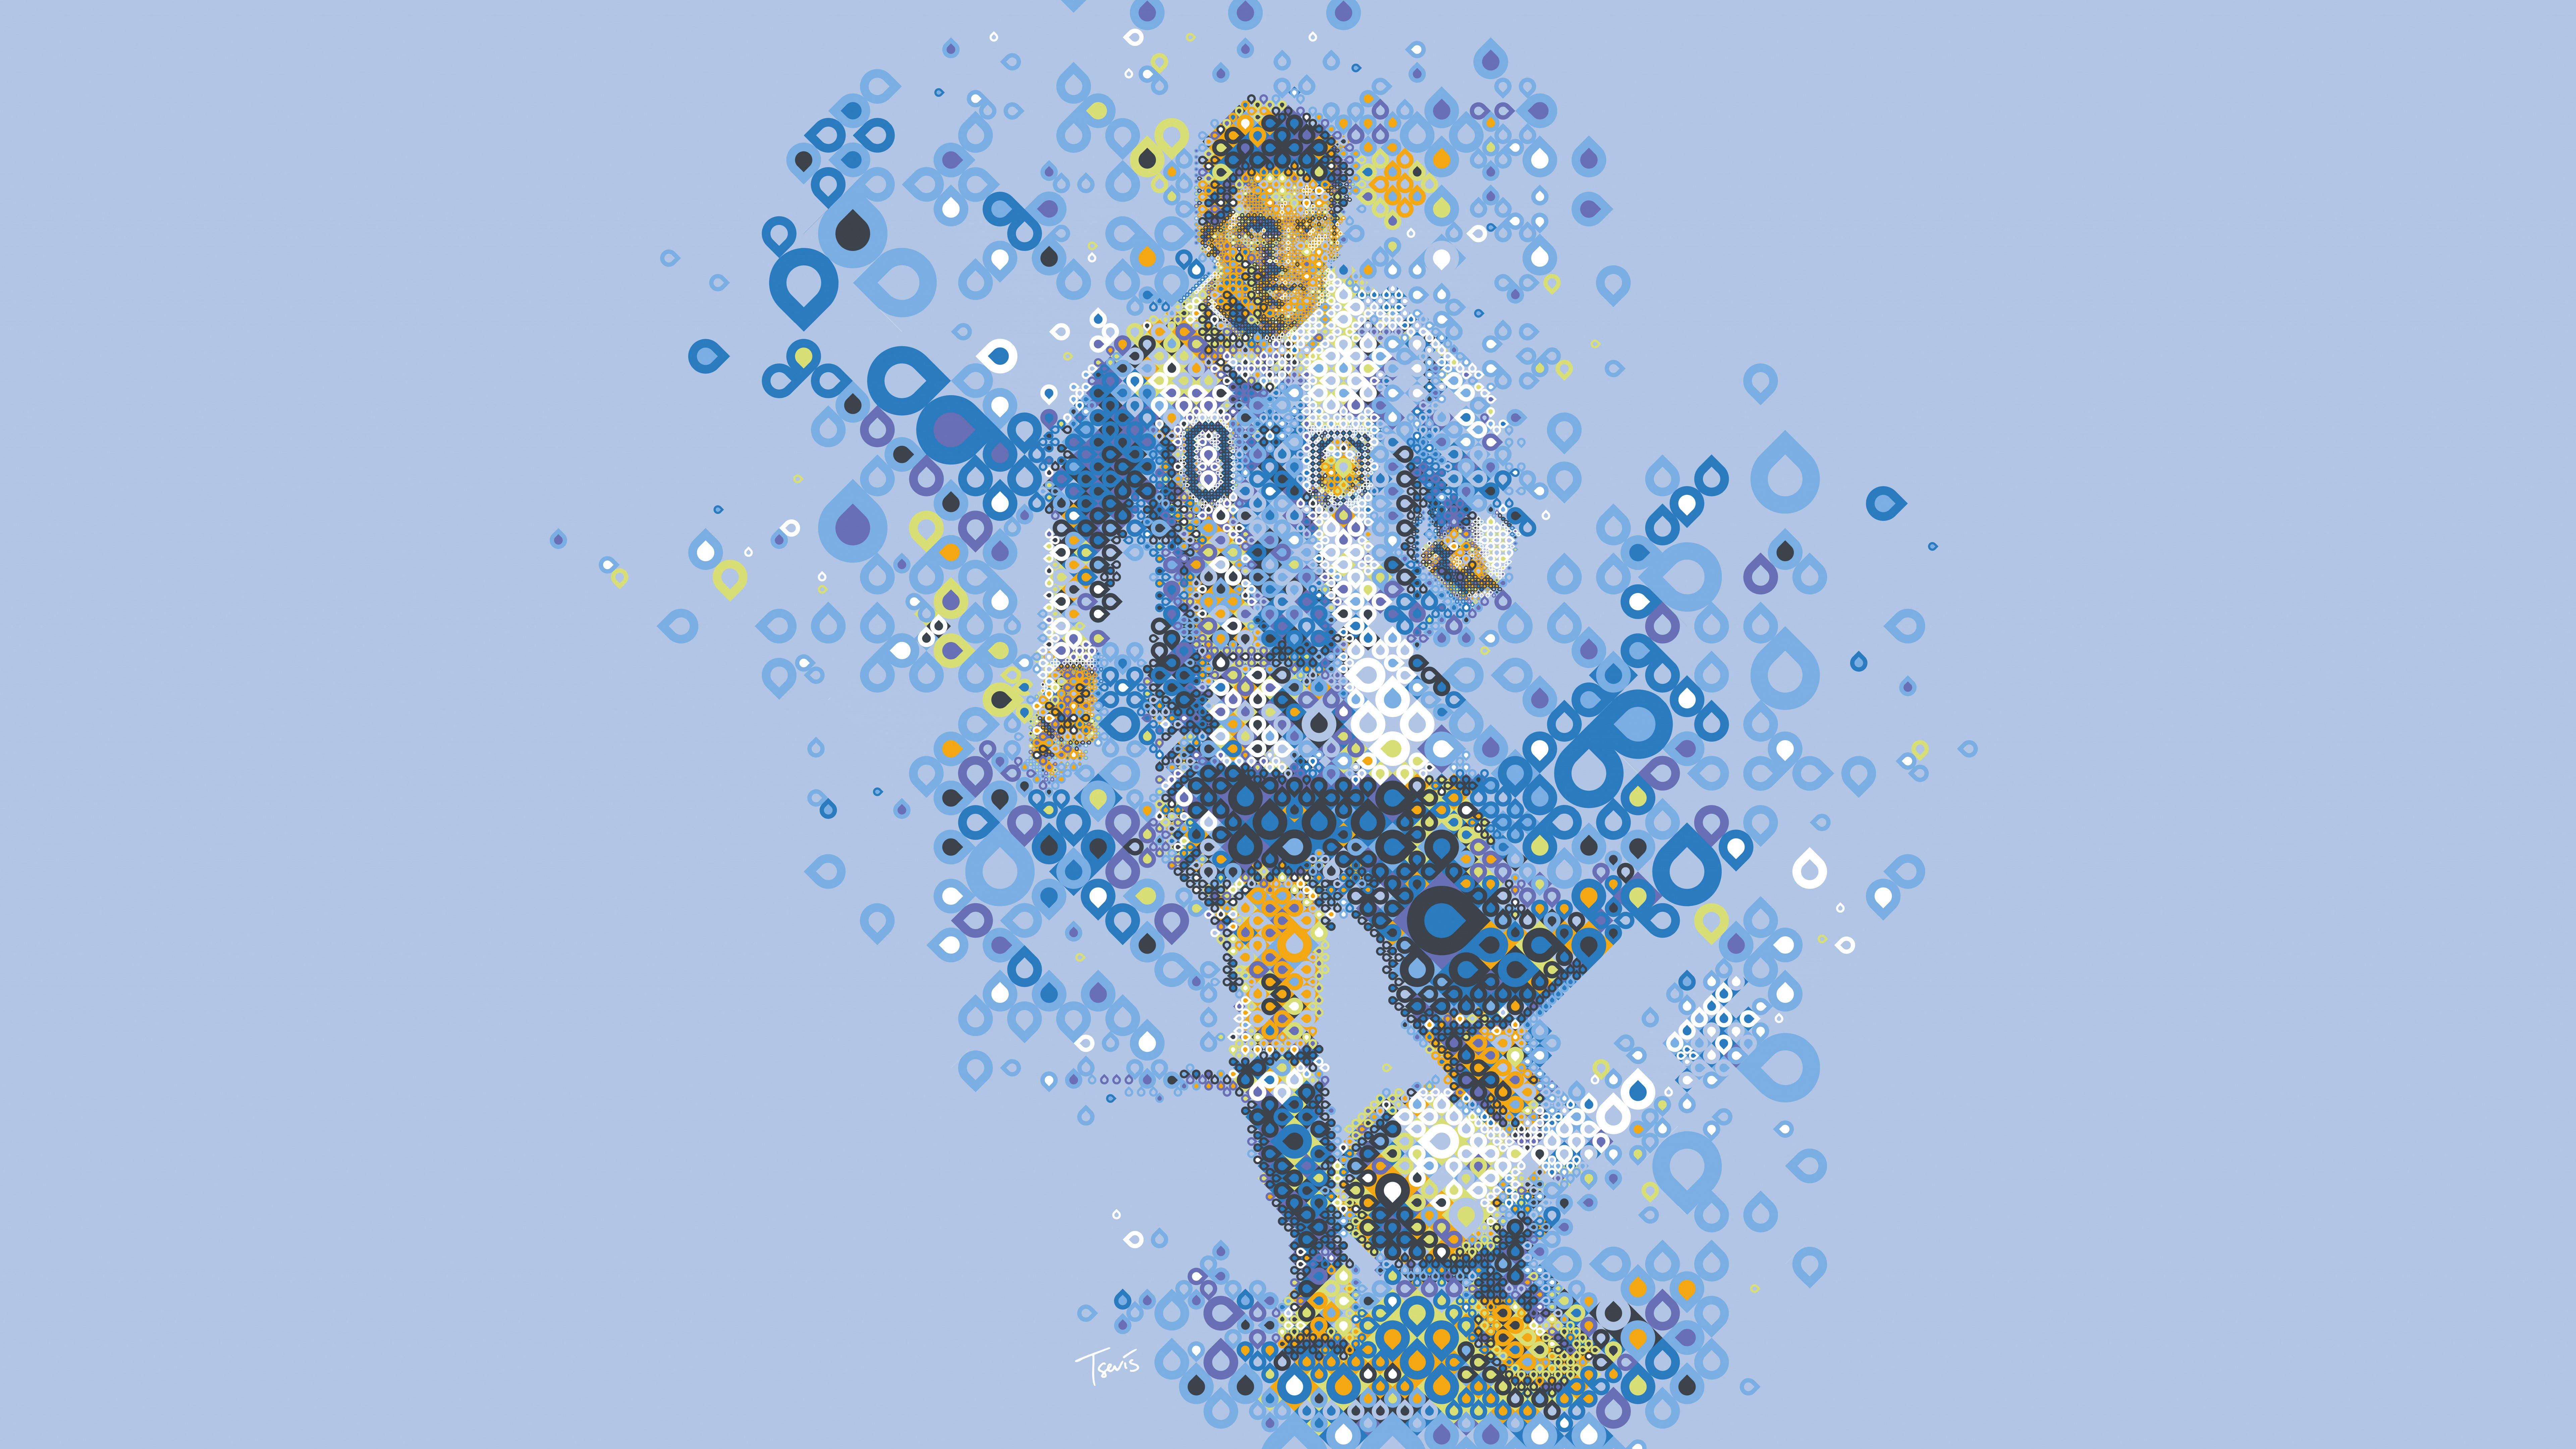 Lionel Messi Mosaic Art 4K 8K